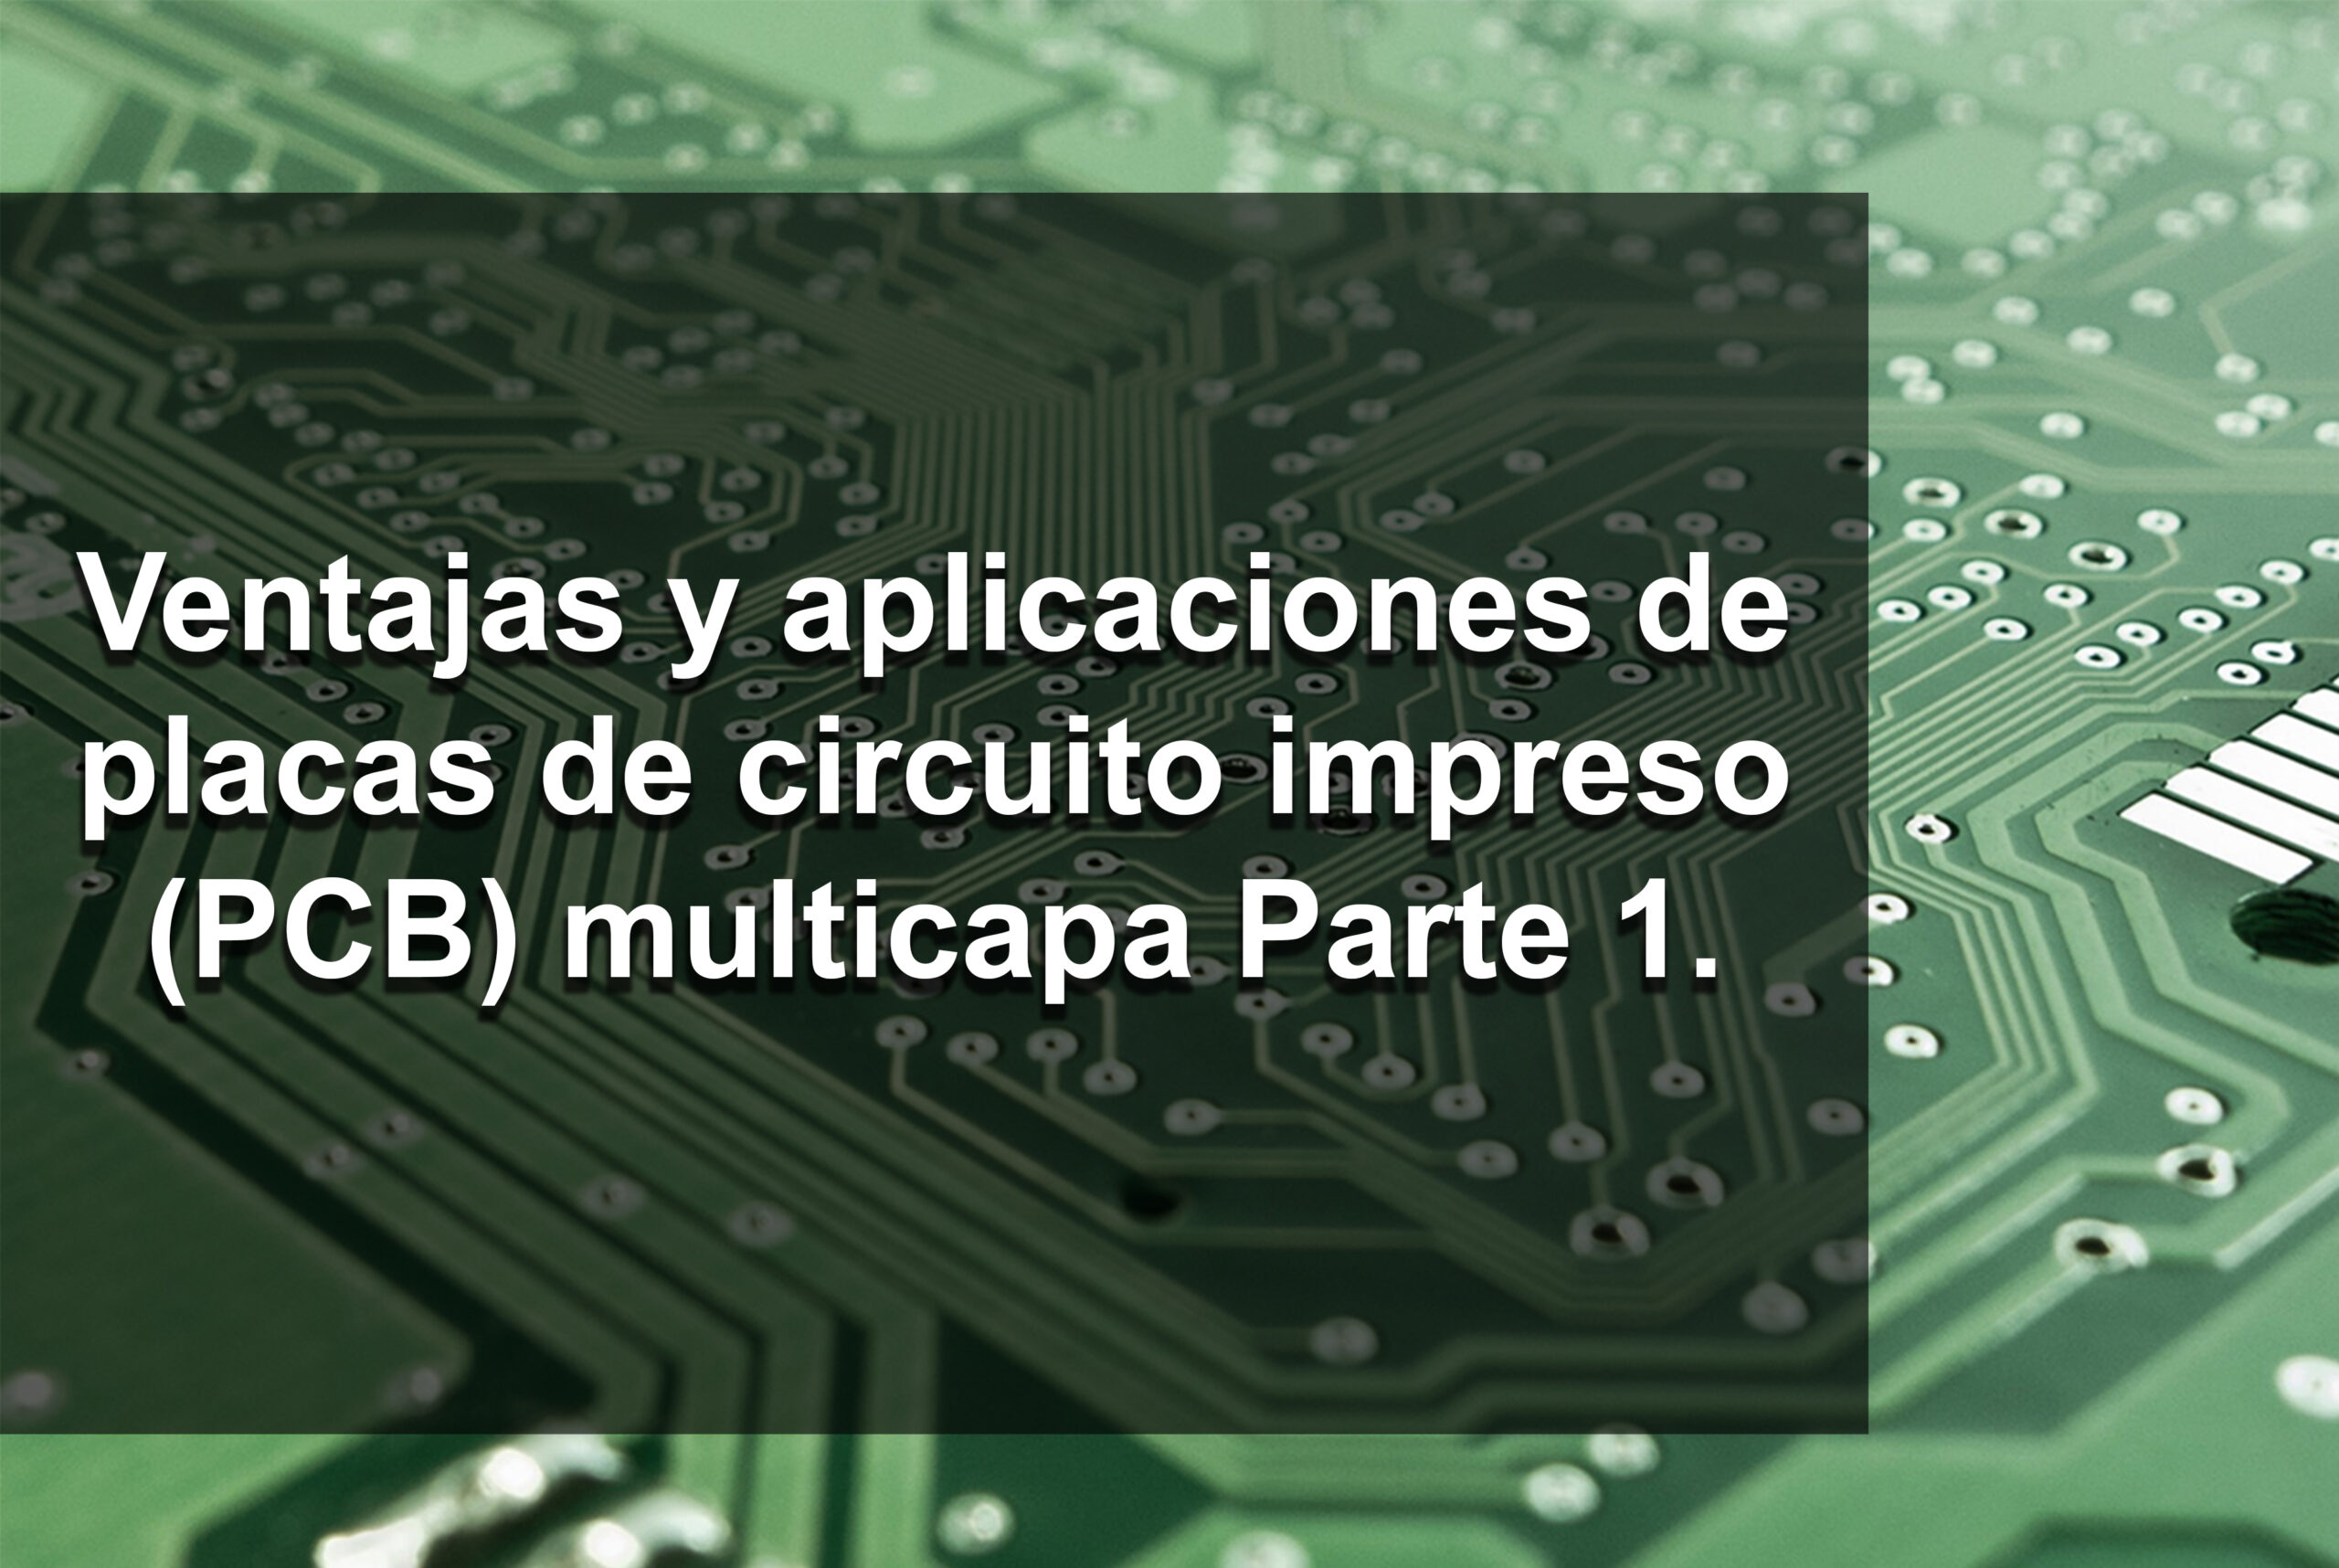 Ventajas y aplicaciones de placas de circuito impreso (PCB) multicapa Parte 1.